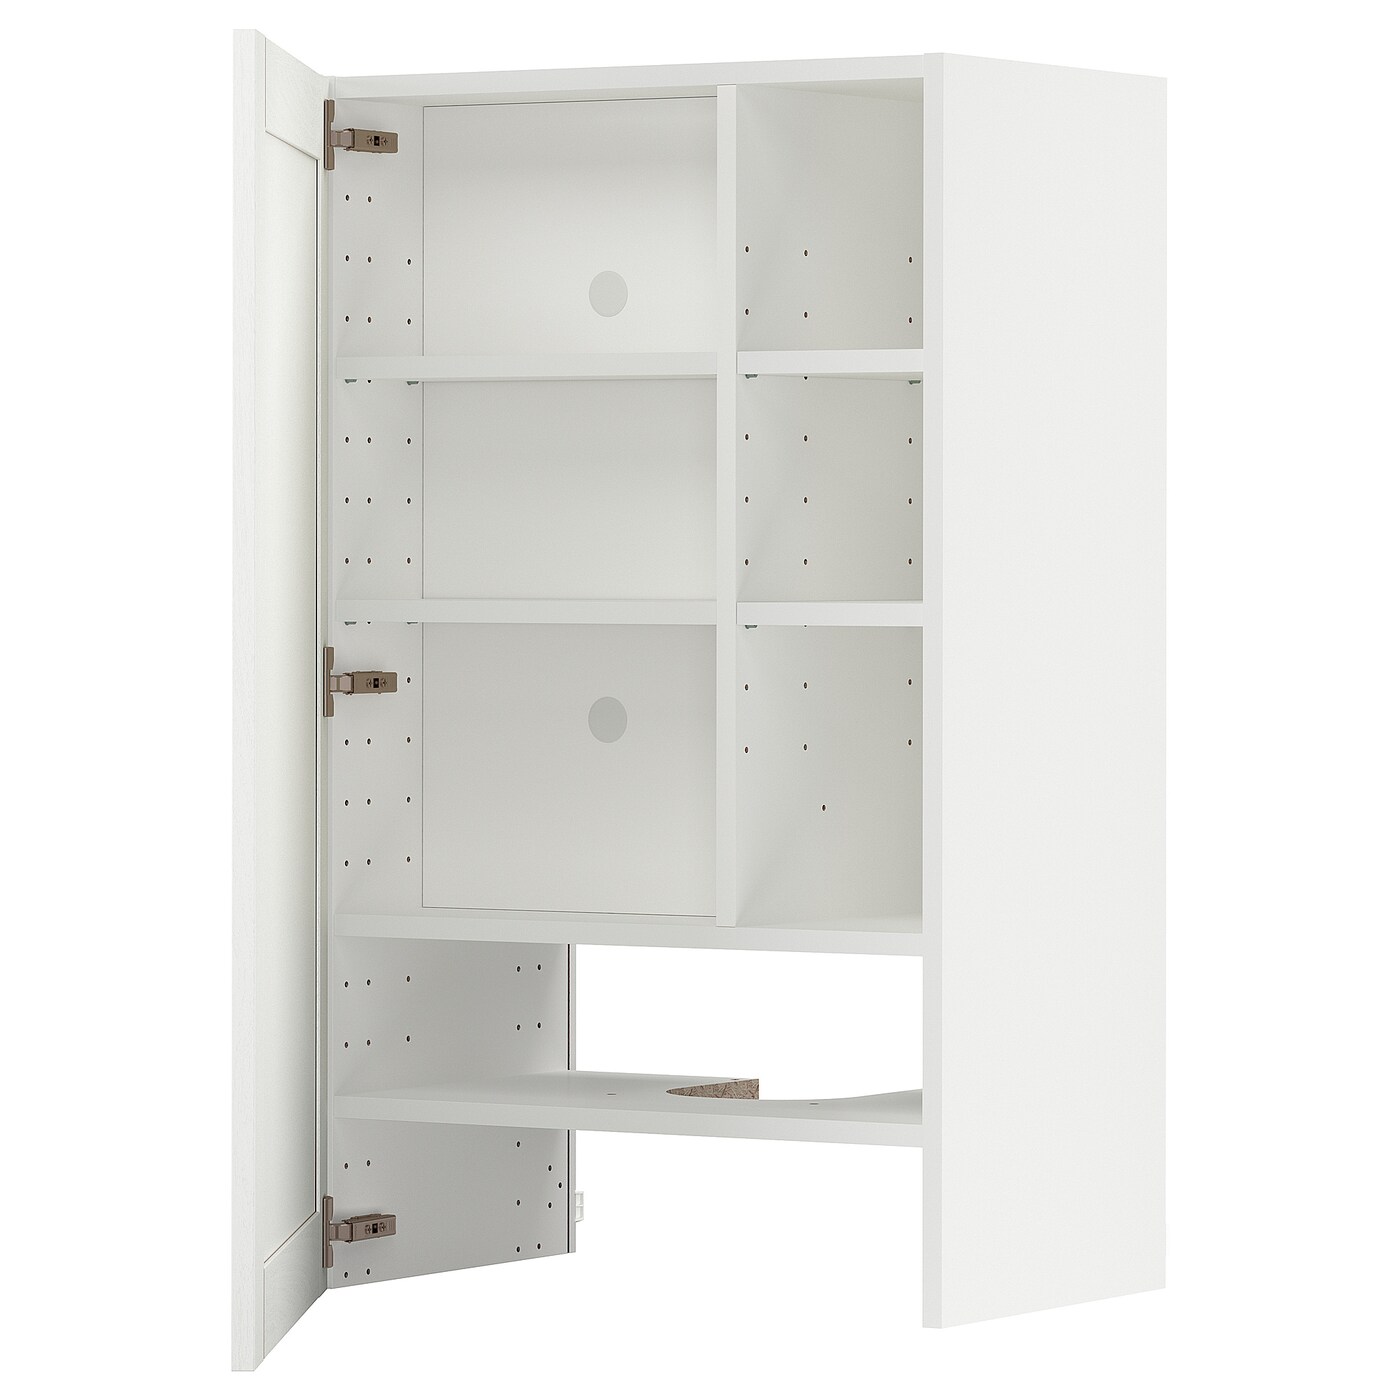 Навесной шкаф с полкой - METOD IKEA/ МЕТОД ИКЕА, 60х100 см, белый